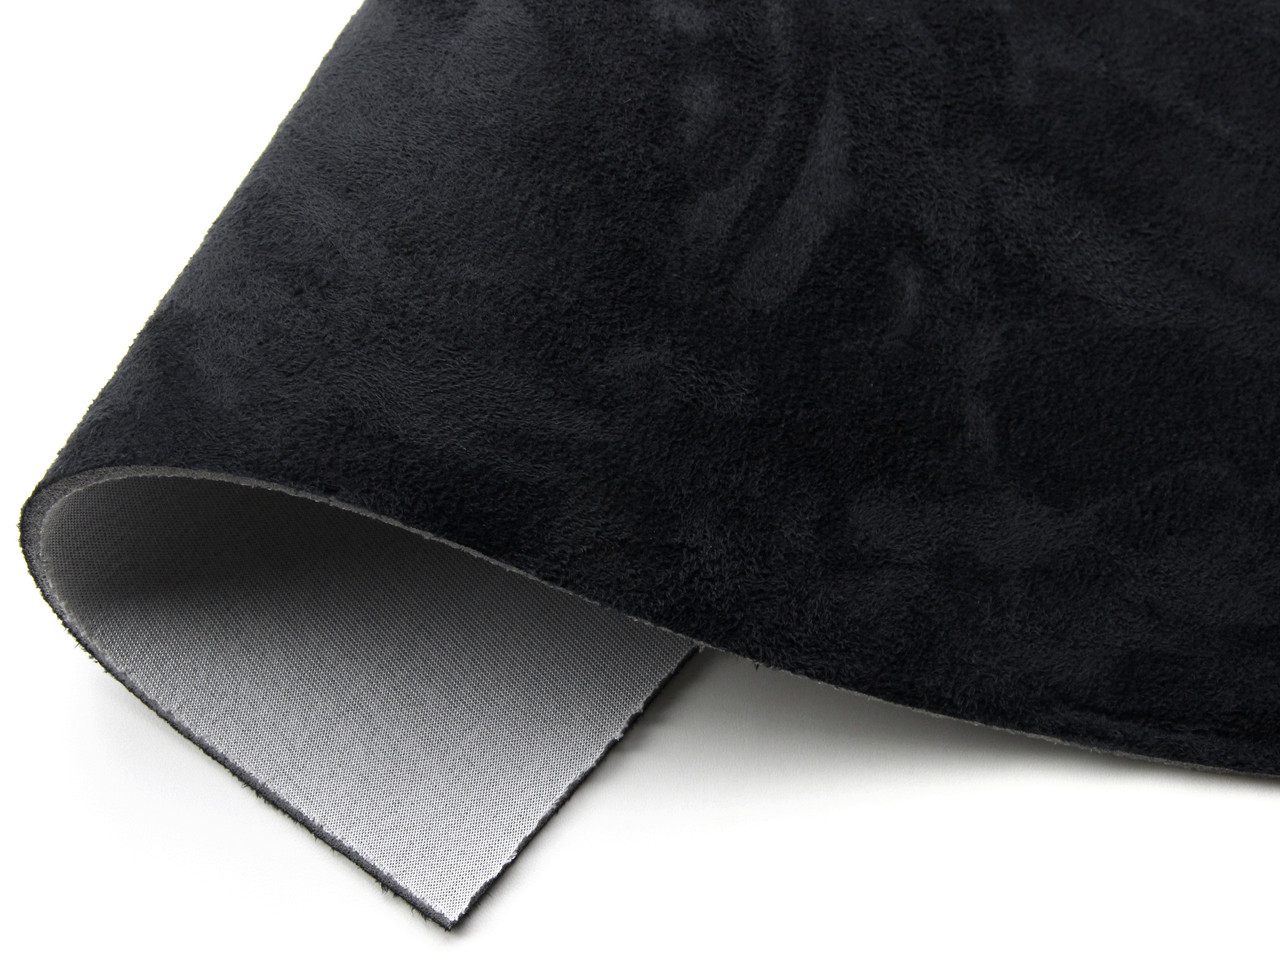 Автомобильная ткань Антара черная, на поролоне и сетке, толщина 4мм, ширина 145см, Турция детальная фотка